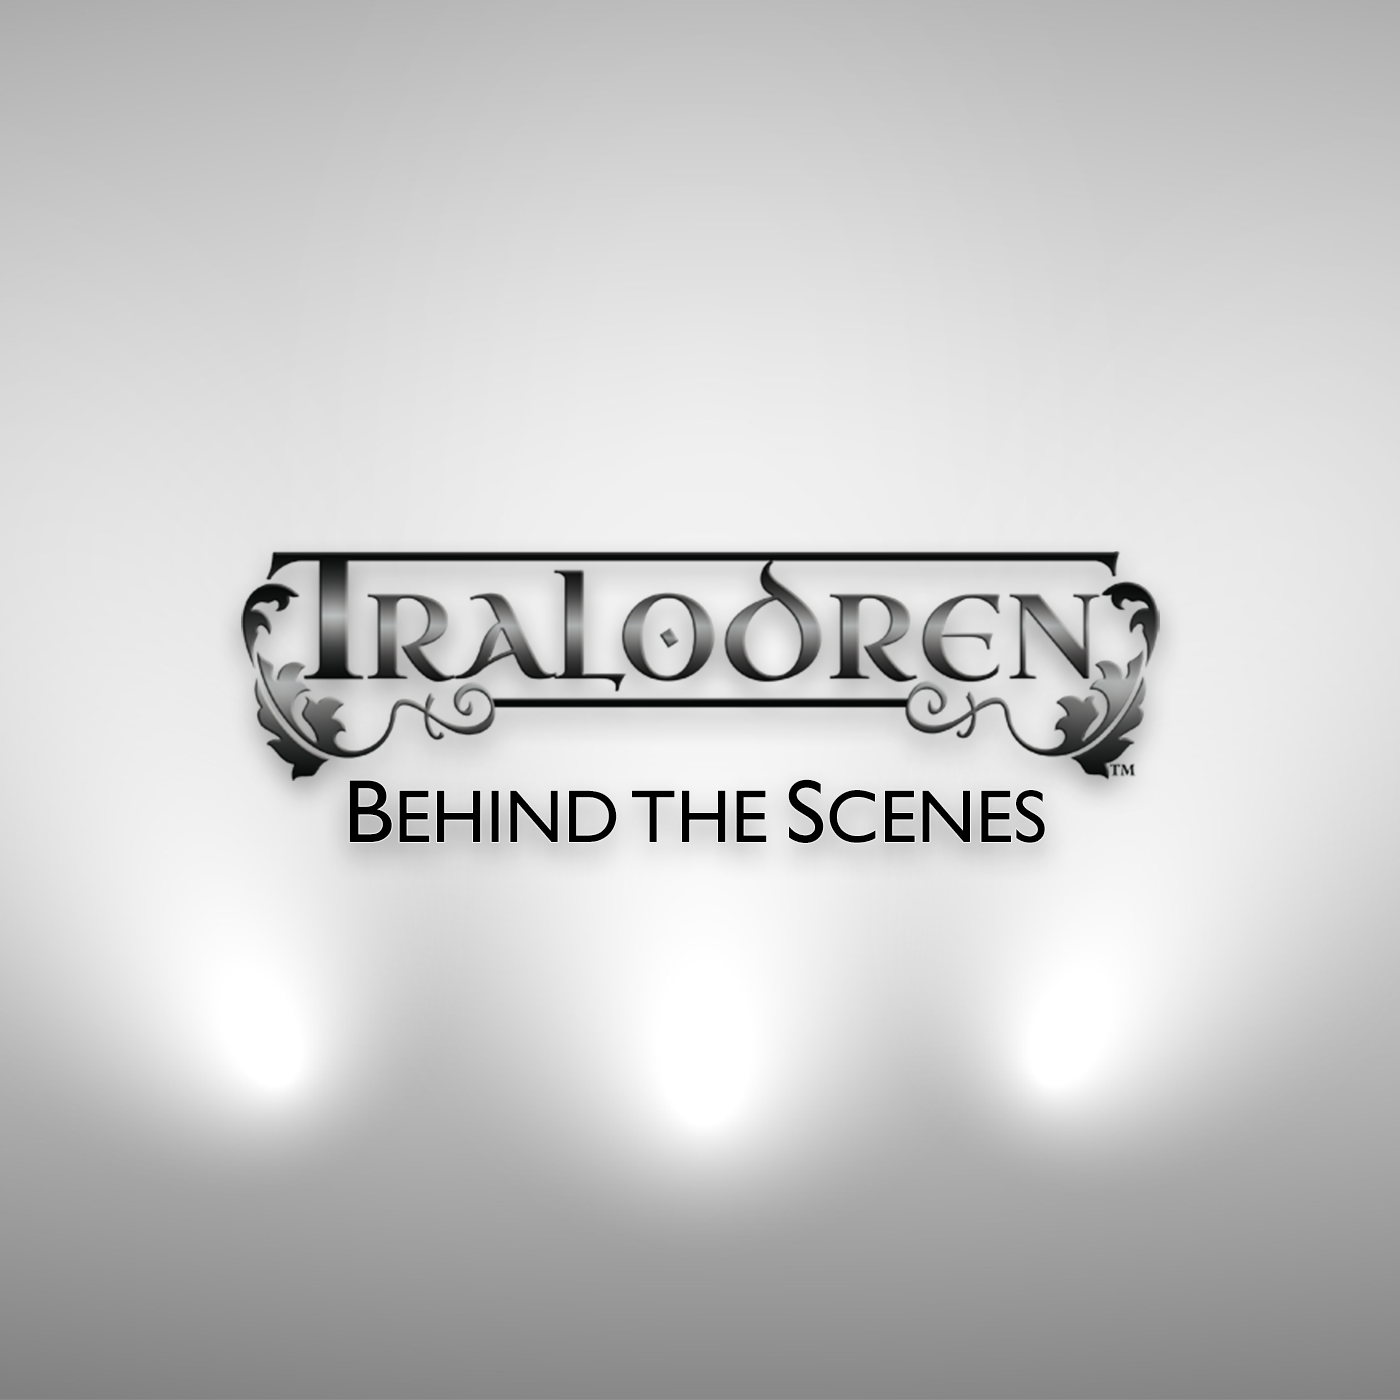 Tralodren: Behind the Scenes